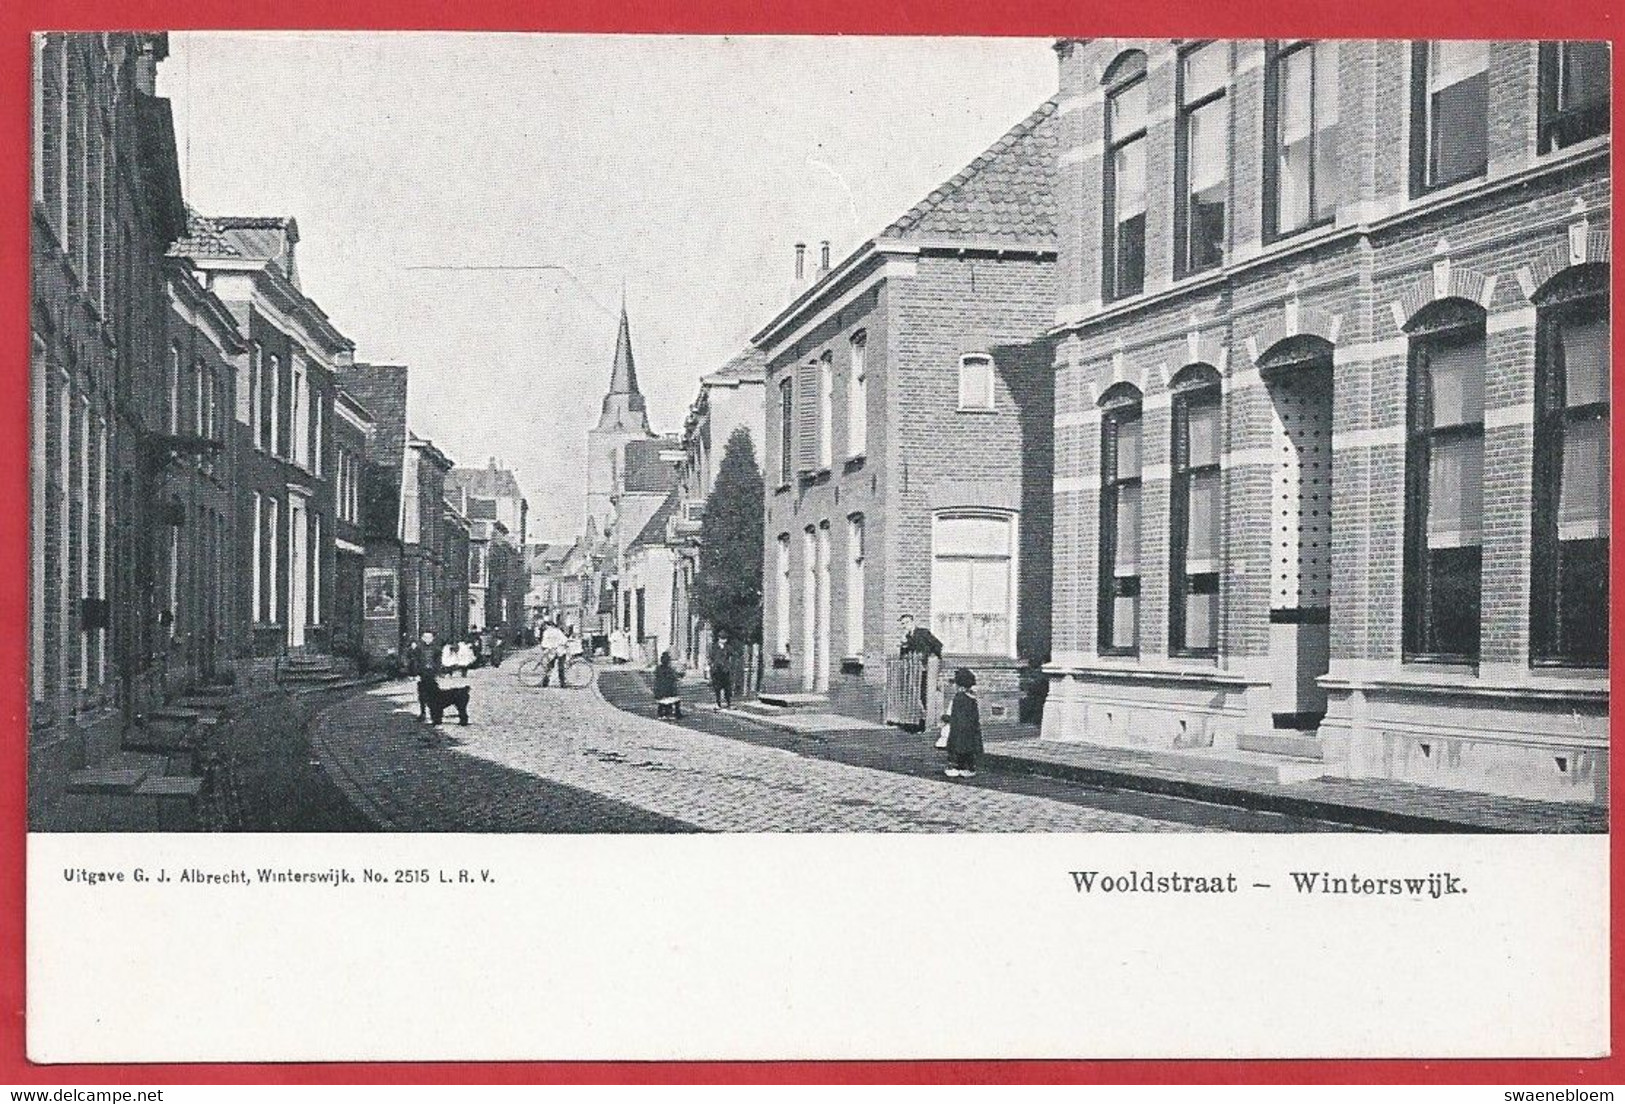 NL.- WINTERSWIJK. WOOLDSTRAAT. Uitgave G.J. Albrecht. No. 2515 L.R.V. - Winterswijk